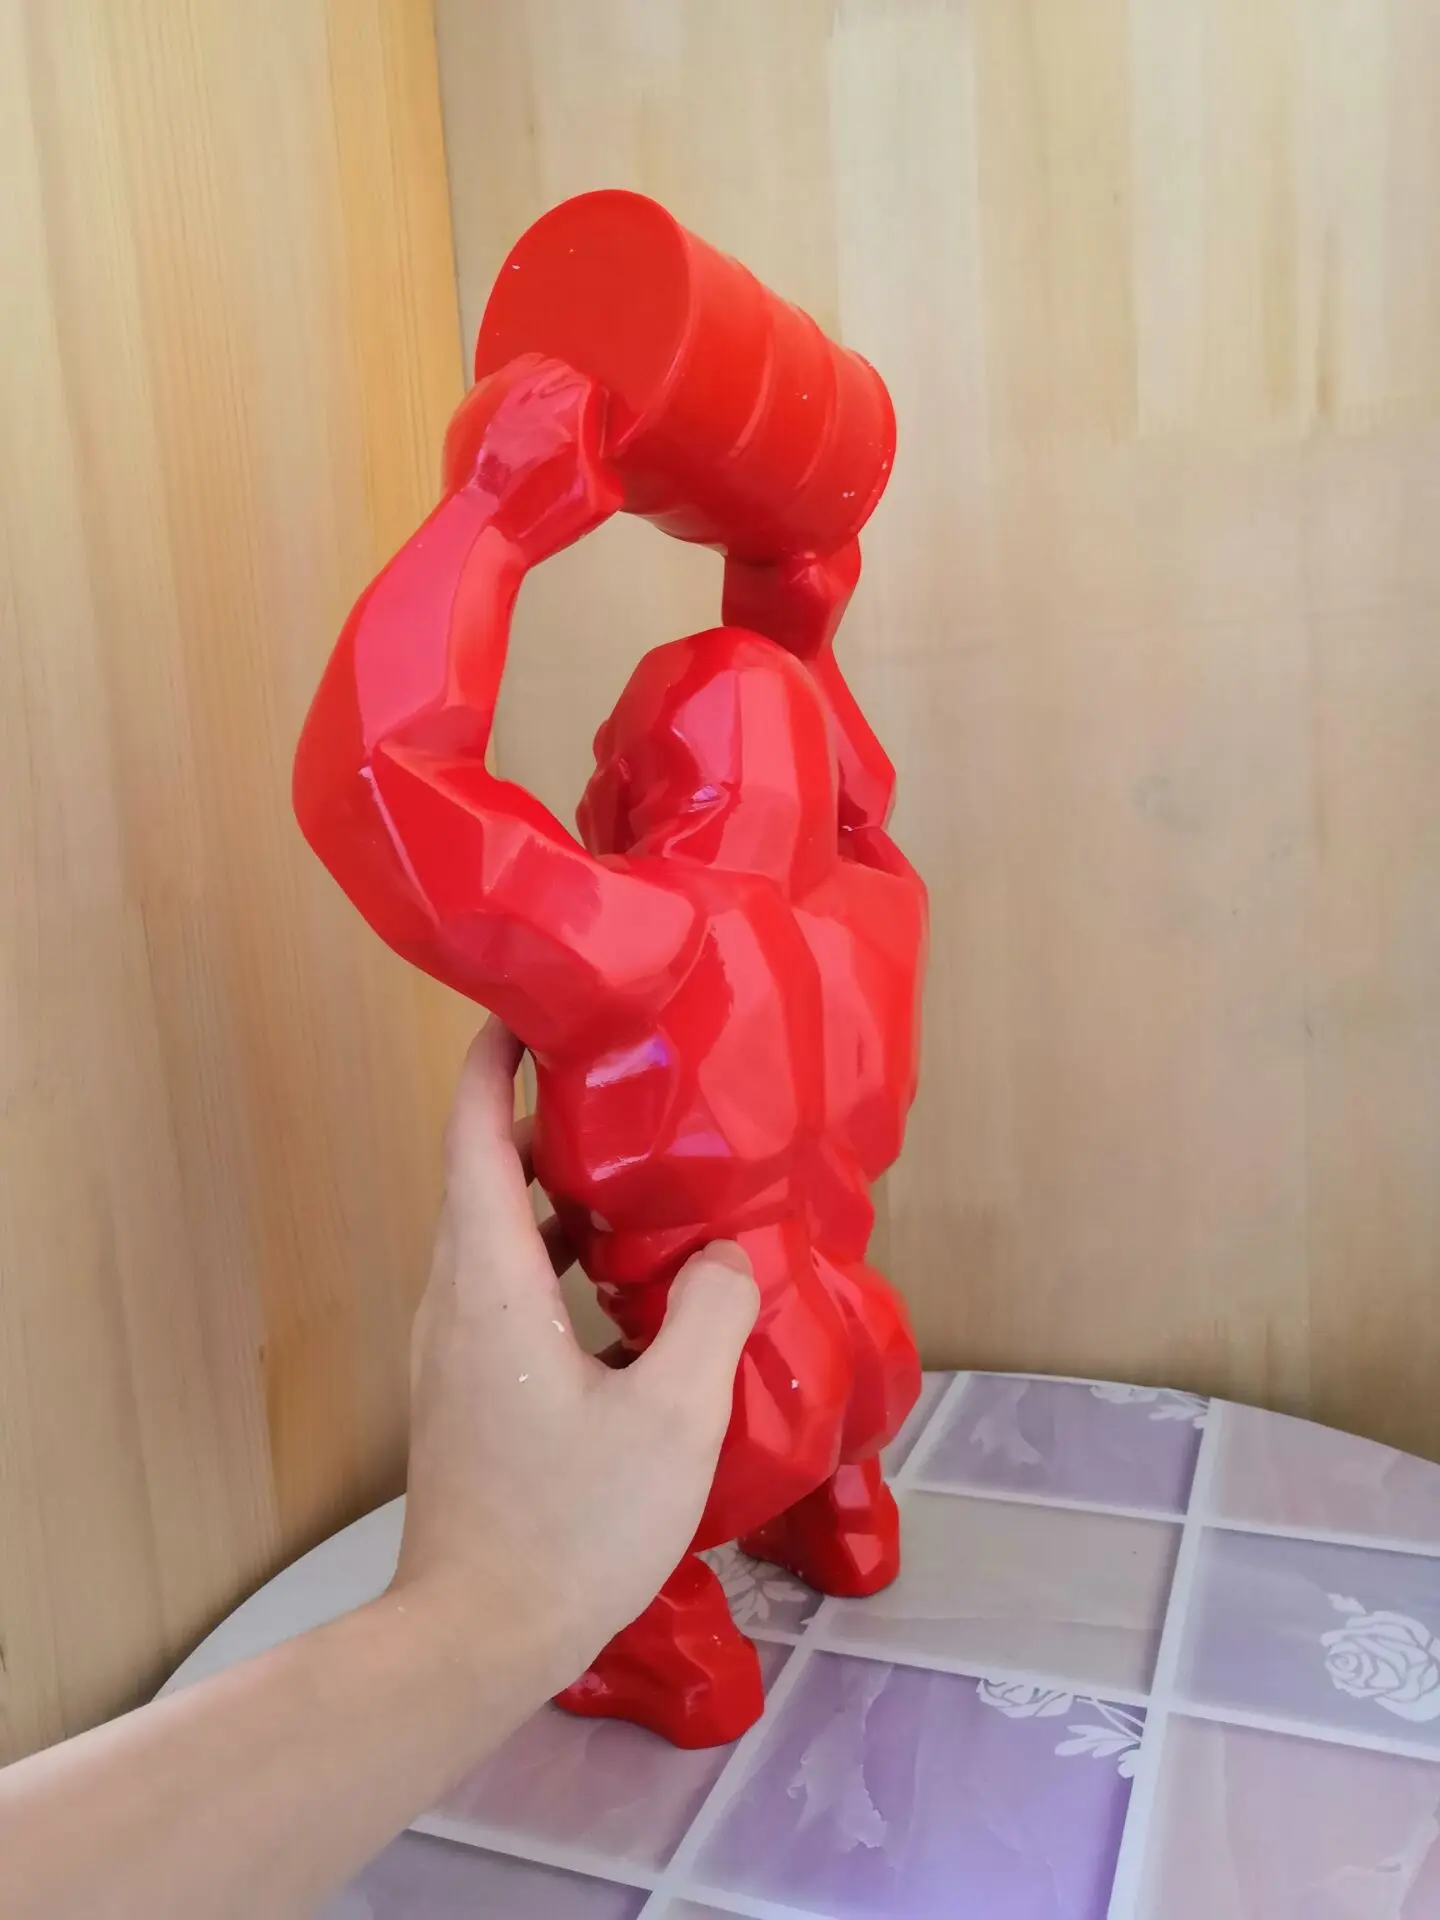 1" креативное украшение, арт-поделка животное резиновая Имитация Статуя Горилла бюст фигурка Коллекционная модель игрушечная коробка 40 см Z2071